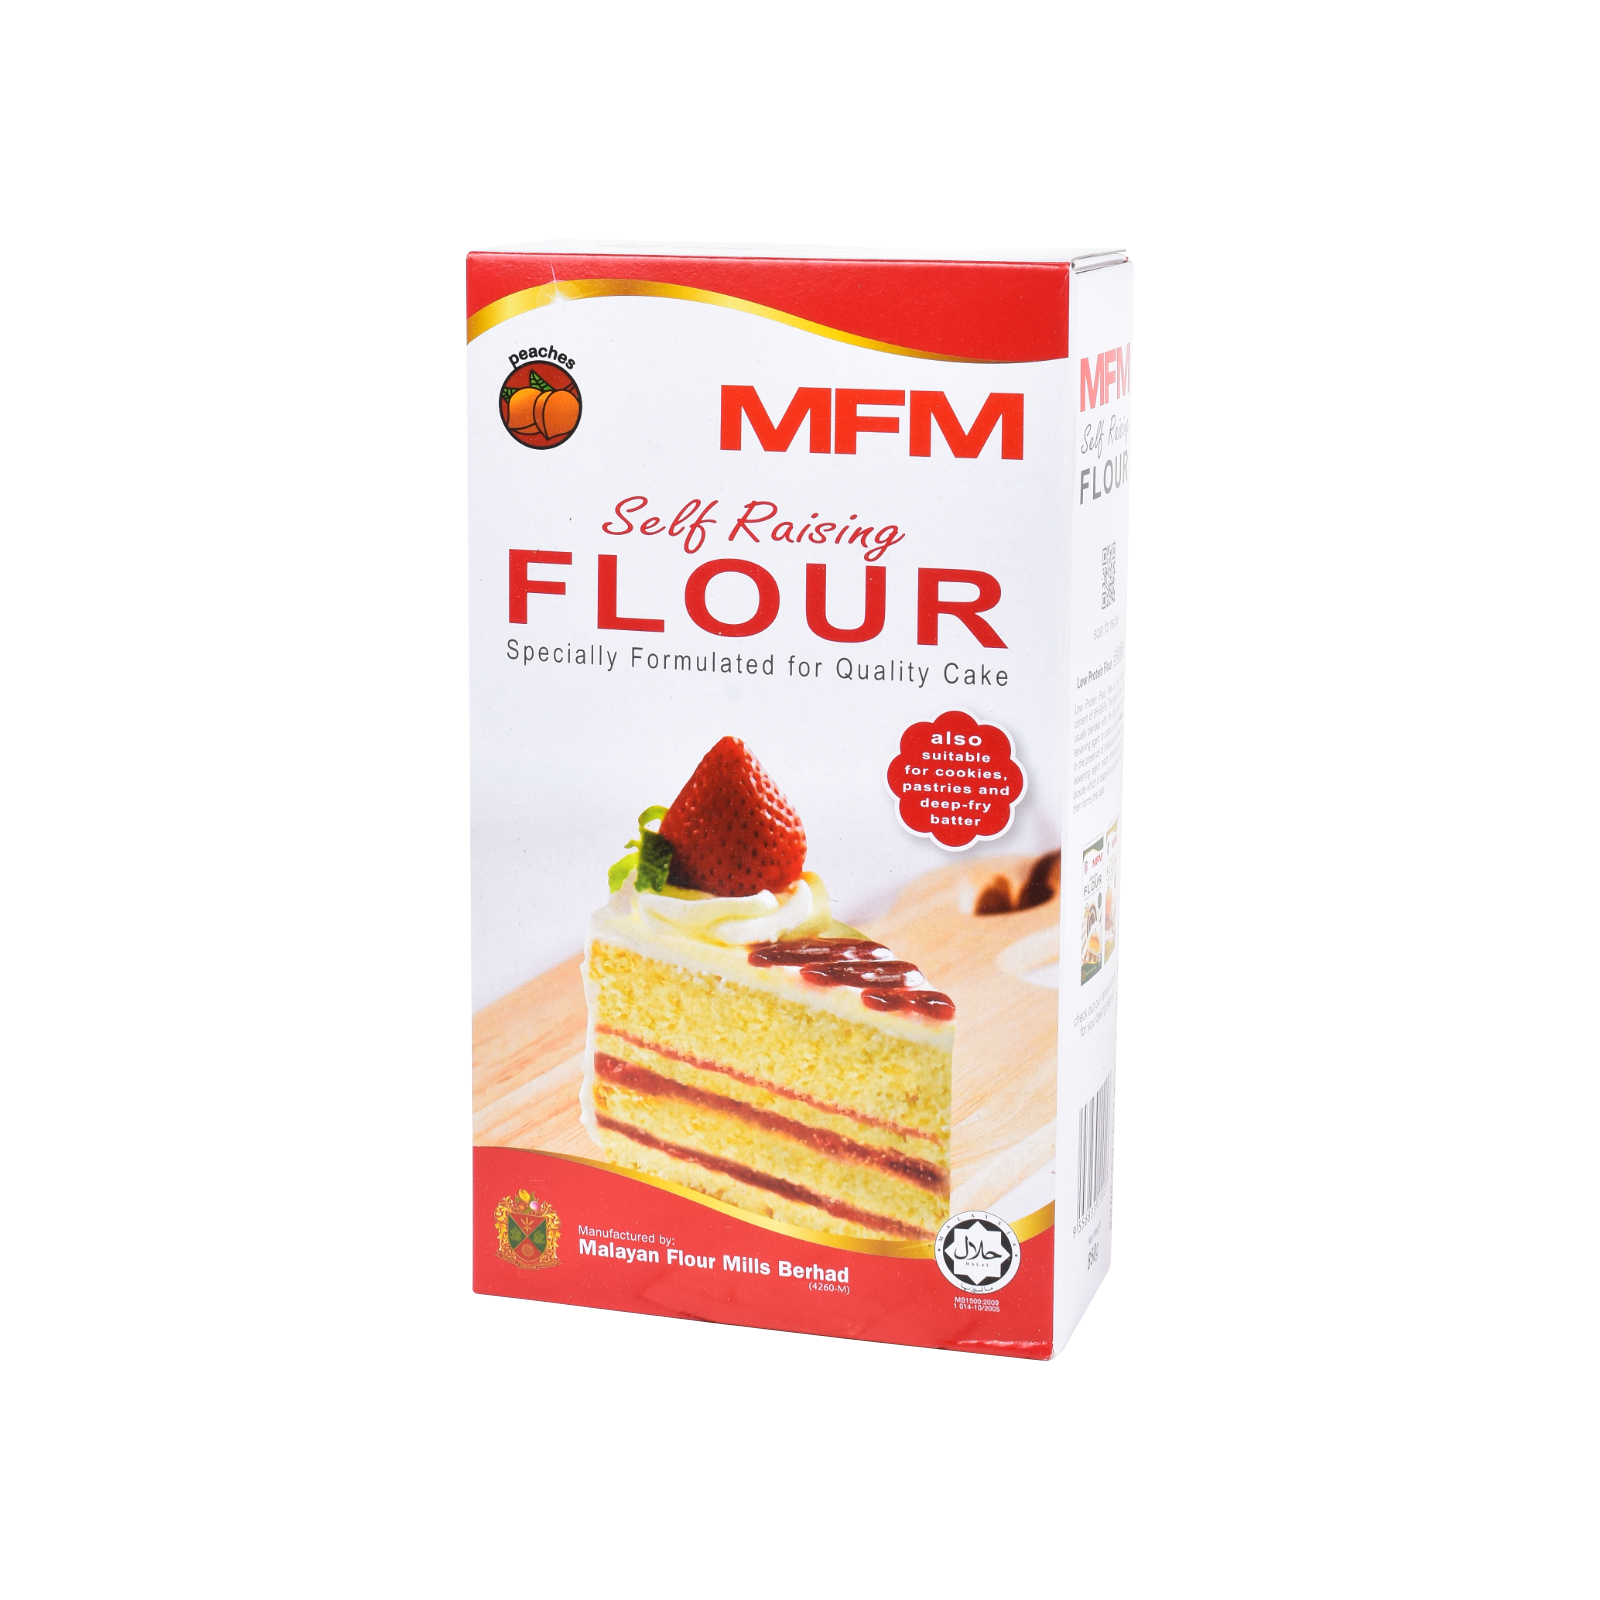 MFM Self Raising Flour 1KG.png